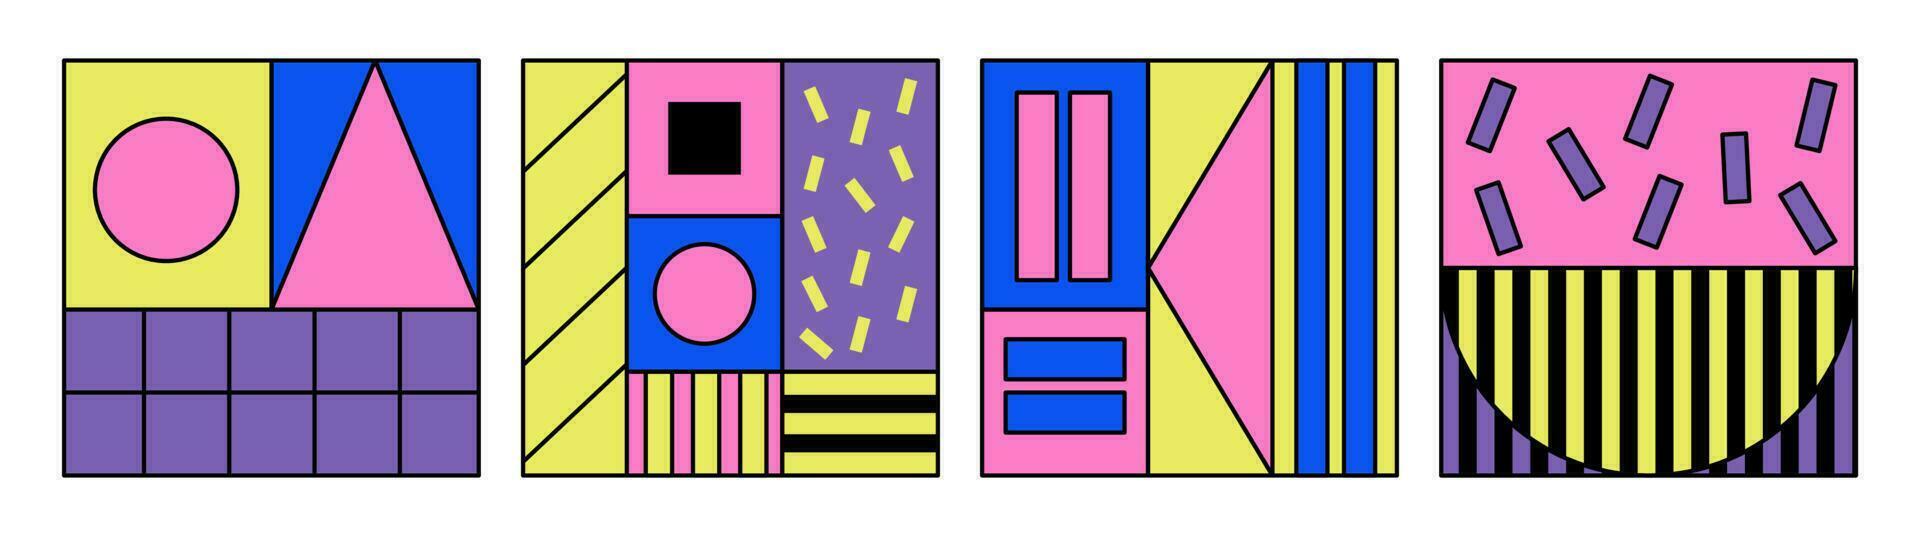 uppsättning av retro abstrakt rutor, plåster. 80-tal, 90s modern memphis stil. geometrisk lekfull former. neo-memphis, pop- konst. vektor illustration.